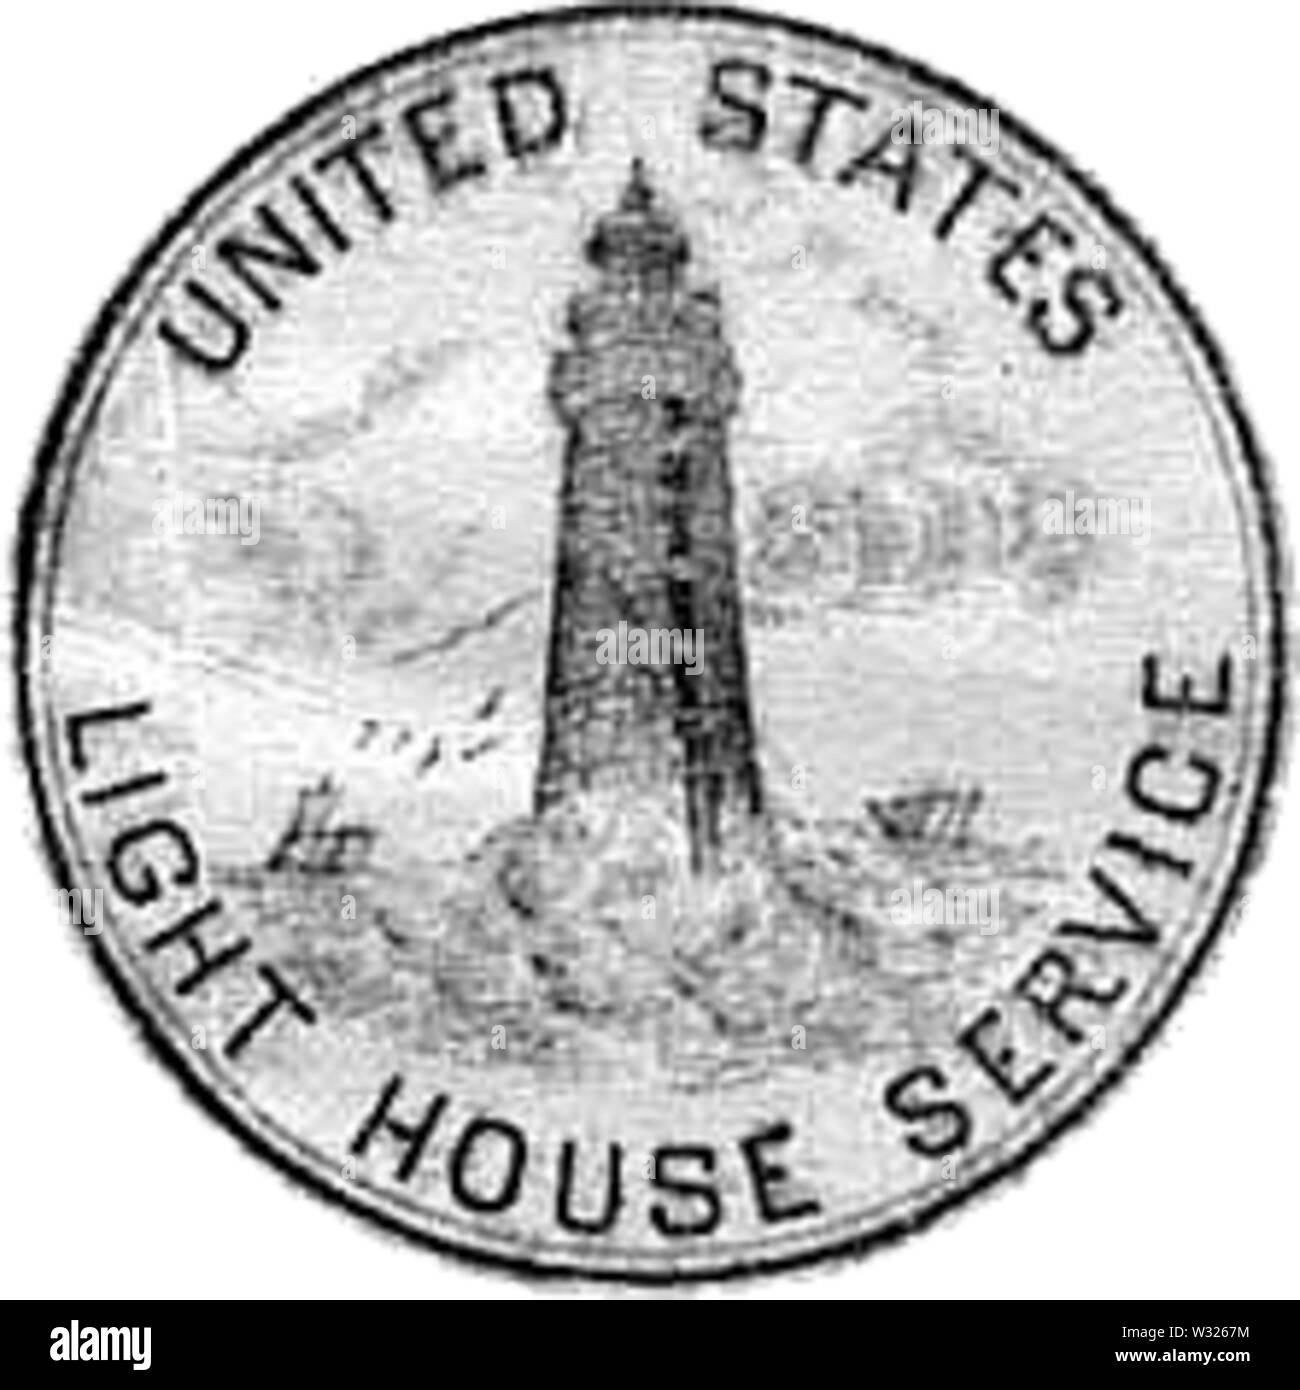 lighthouse service